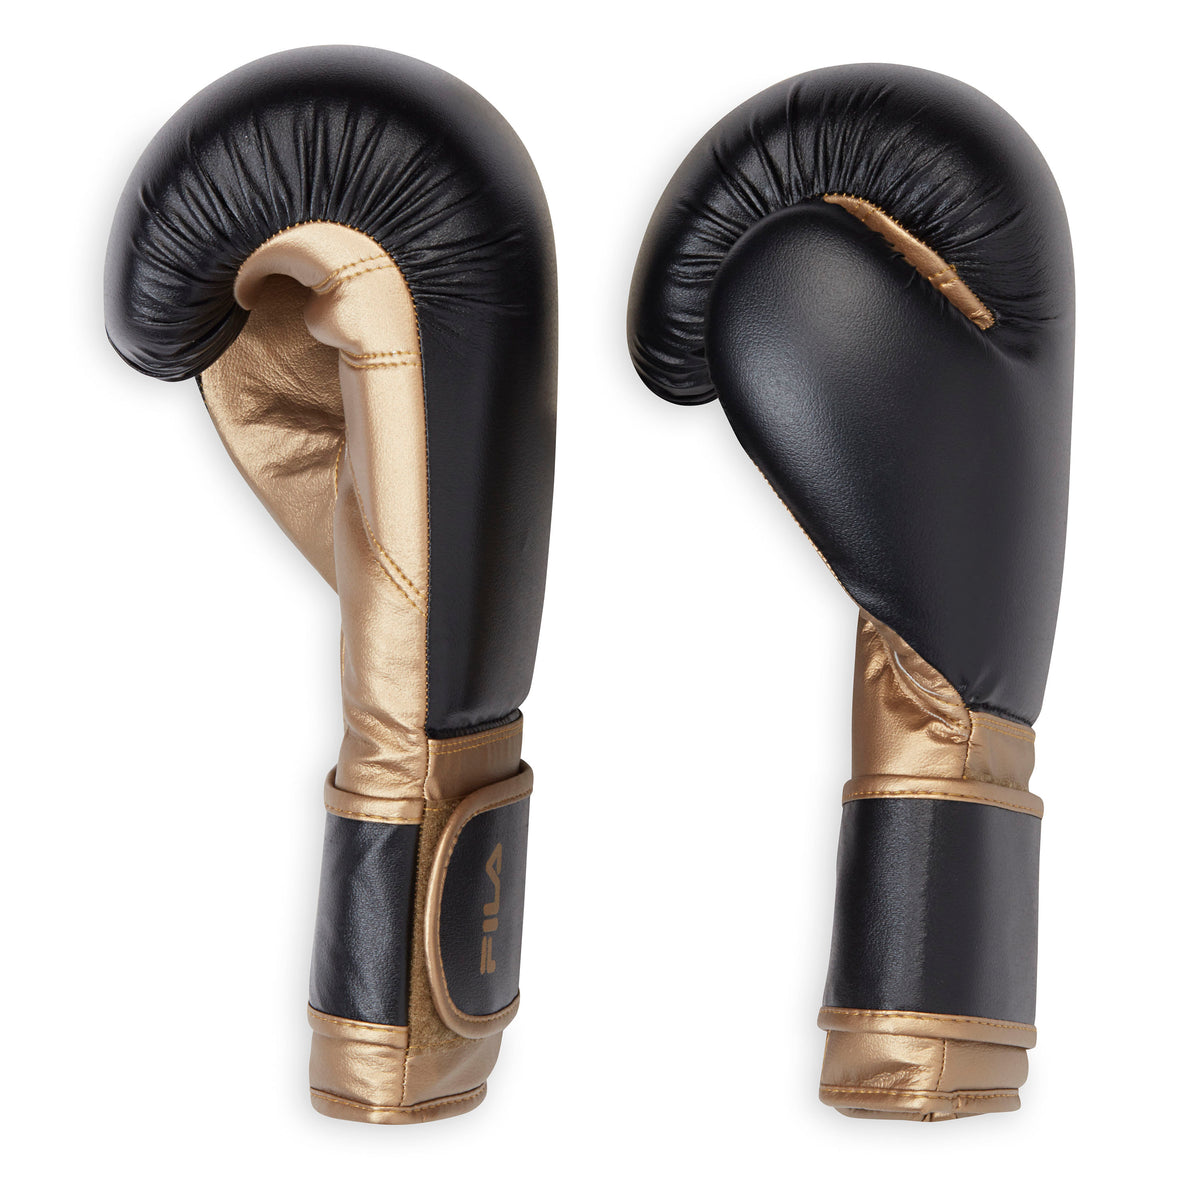 FILA Boxing Gloves (14oz) Black/Gold both gloves side